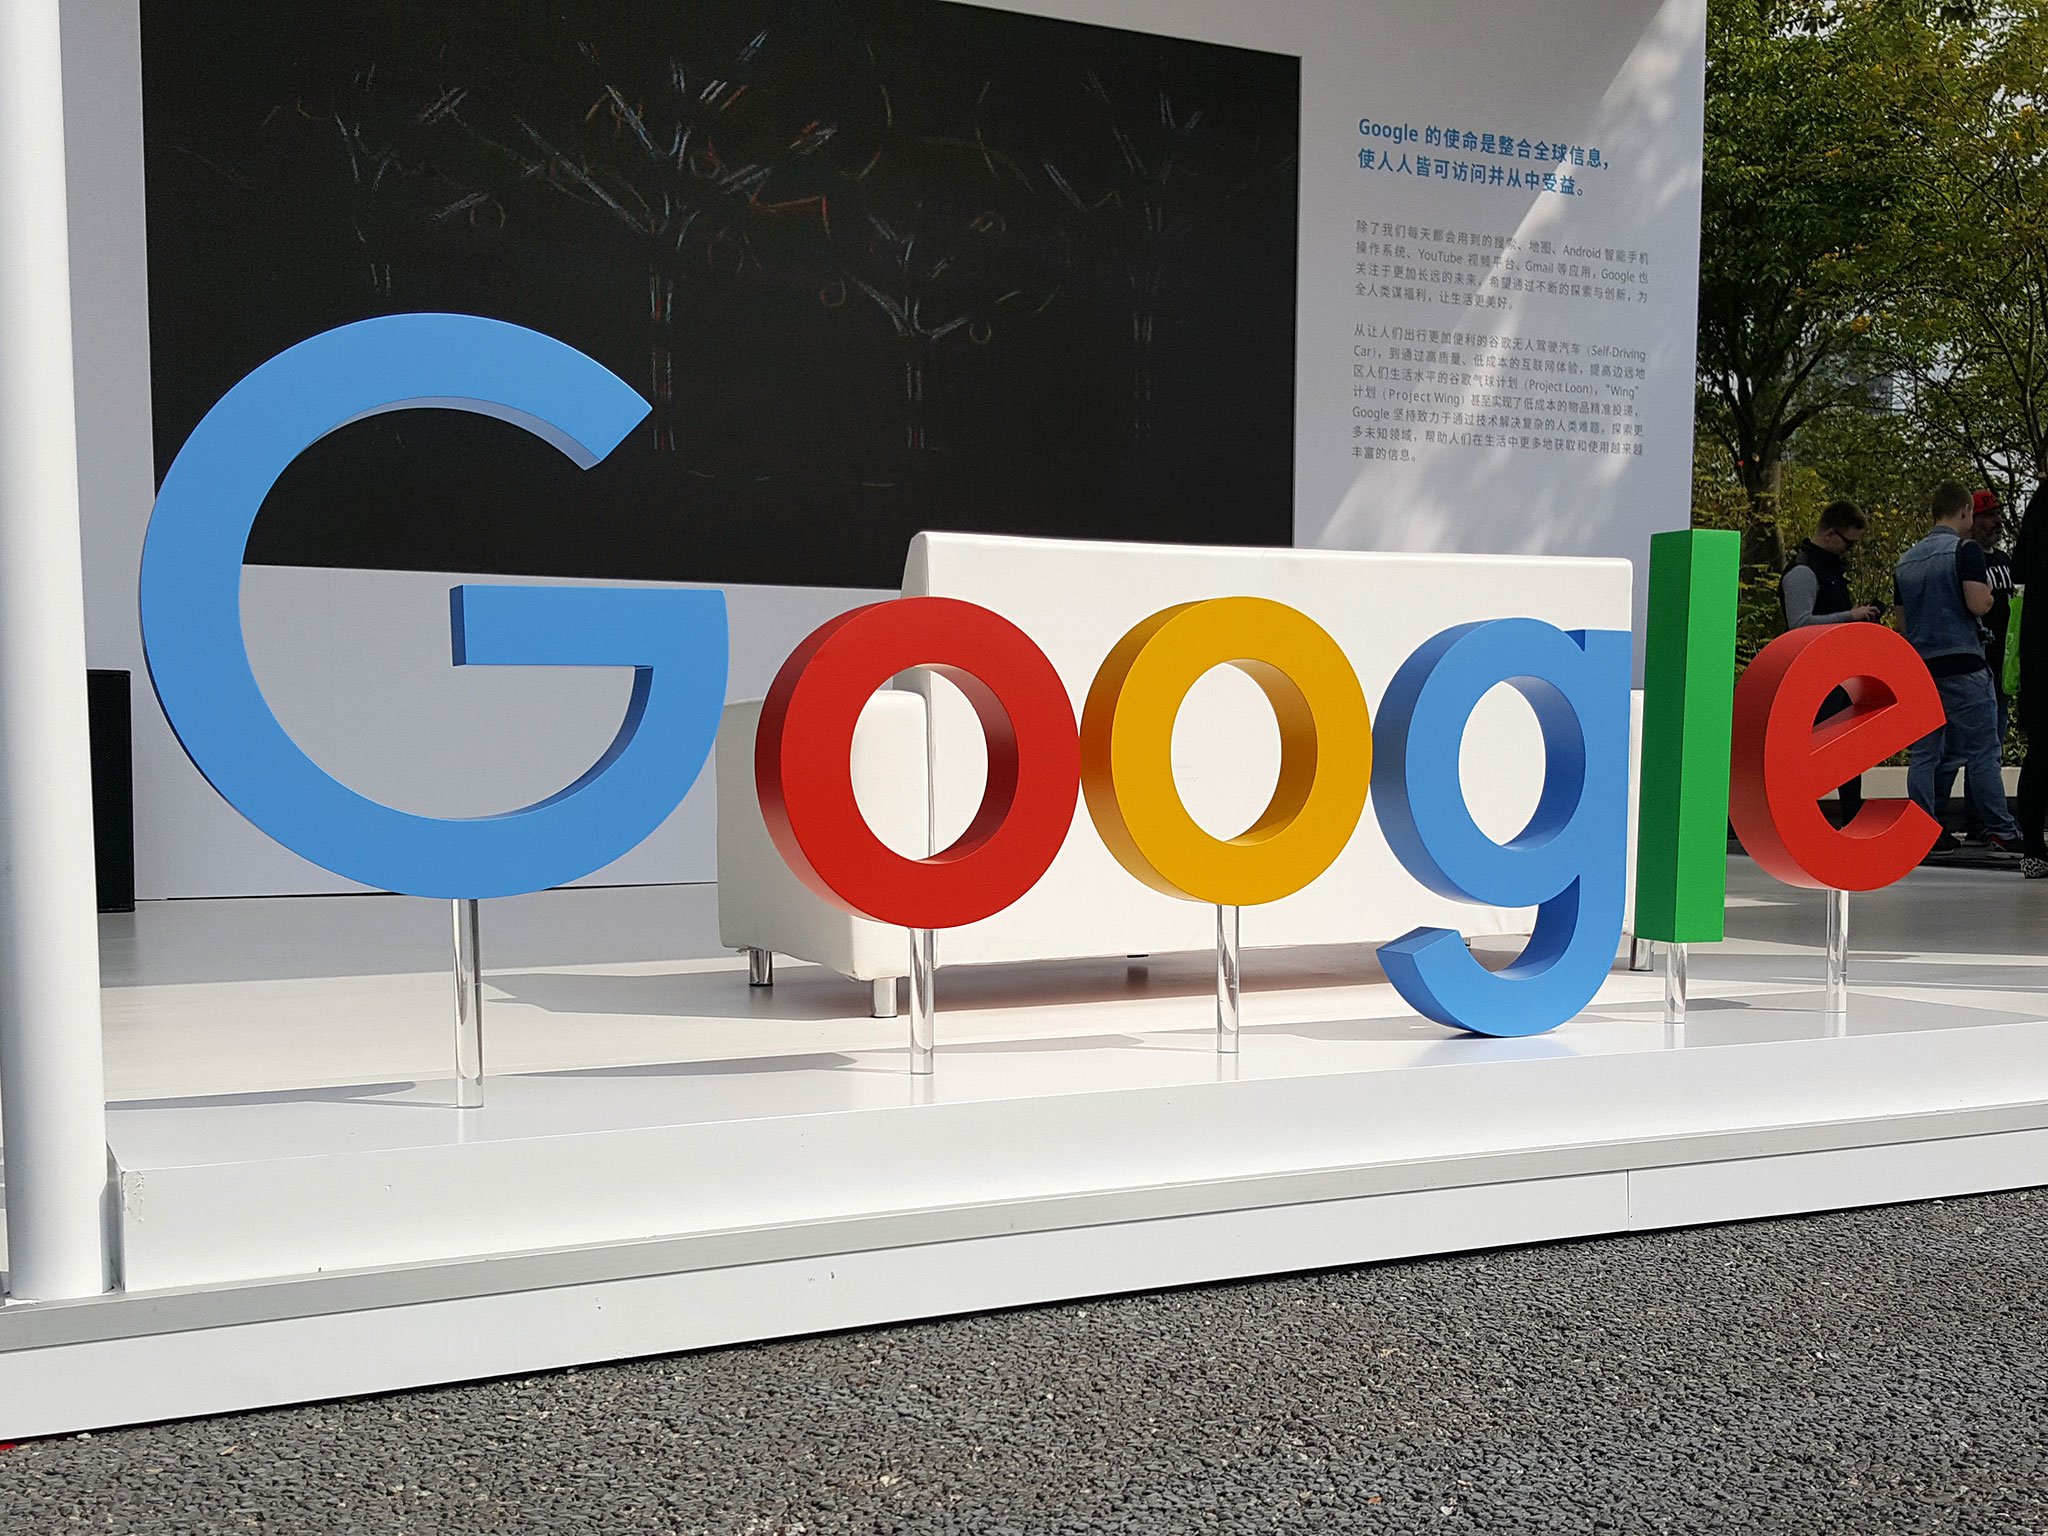 سيؤدي تصميم Google لمعالجات الهاتف الخاصة بها إلى تغيير الصناعة تمامًا نحو الأفضل 51